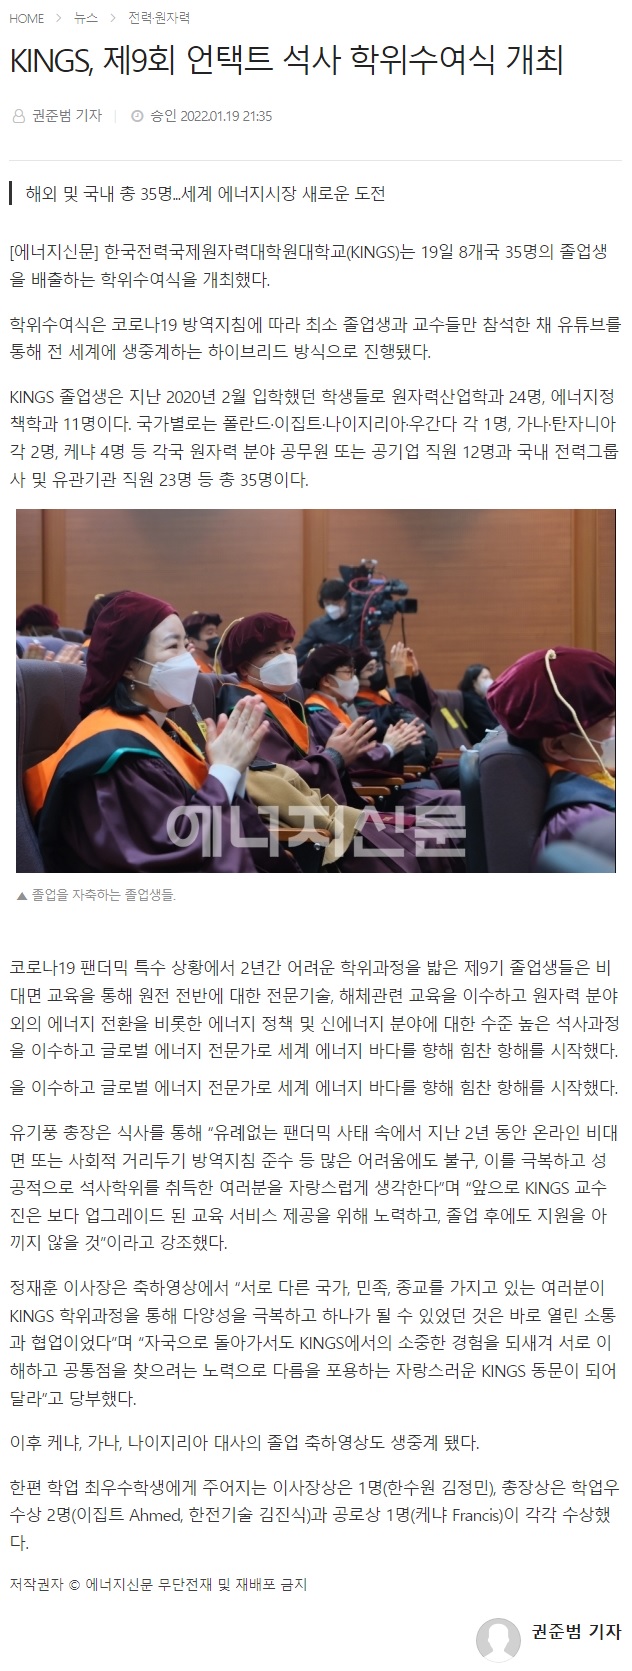 KINGS, 제9회 언택트 석사 학위수여식 개최